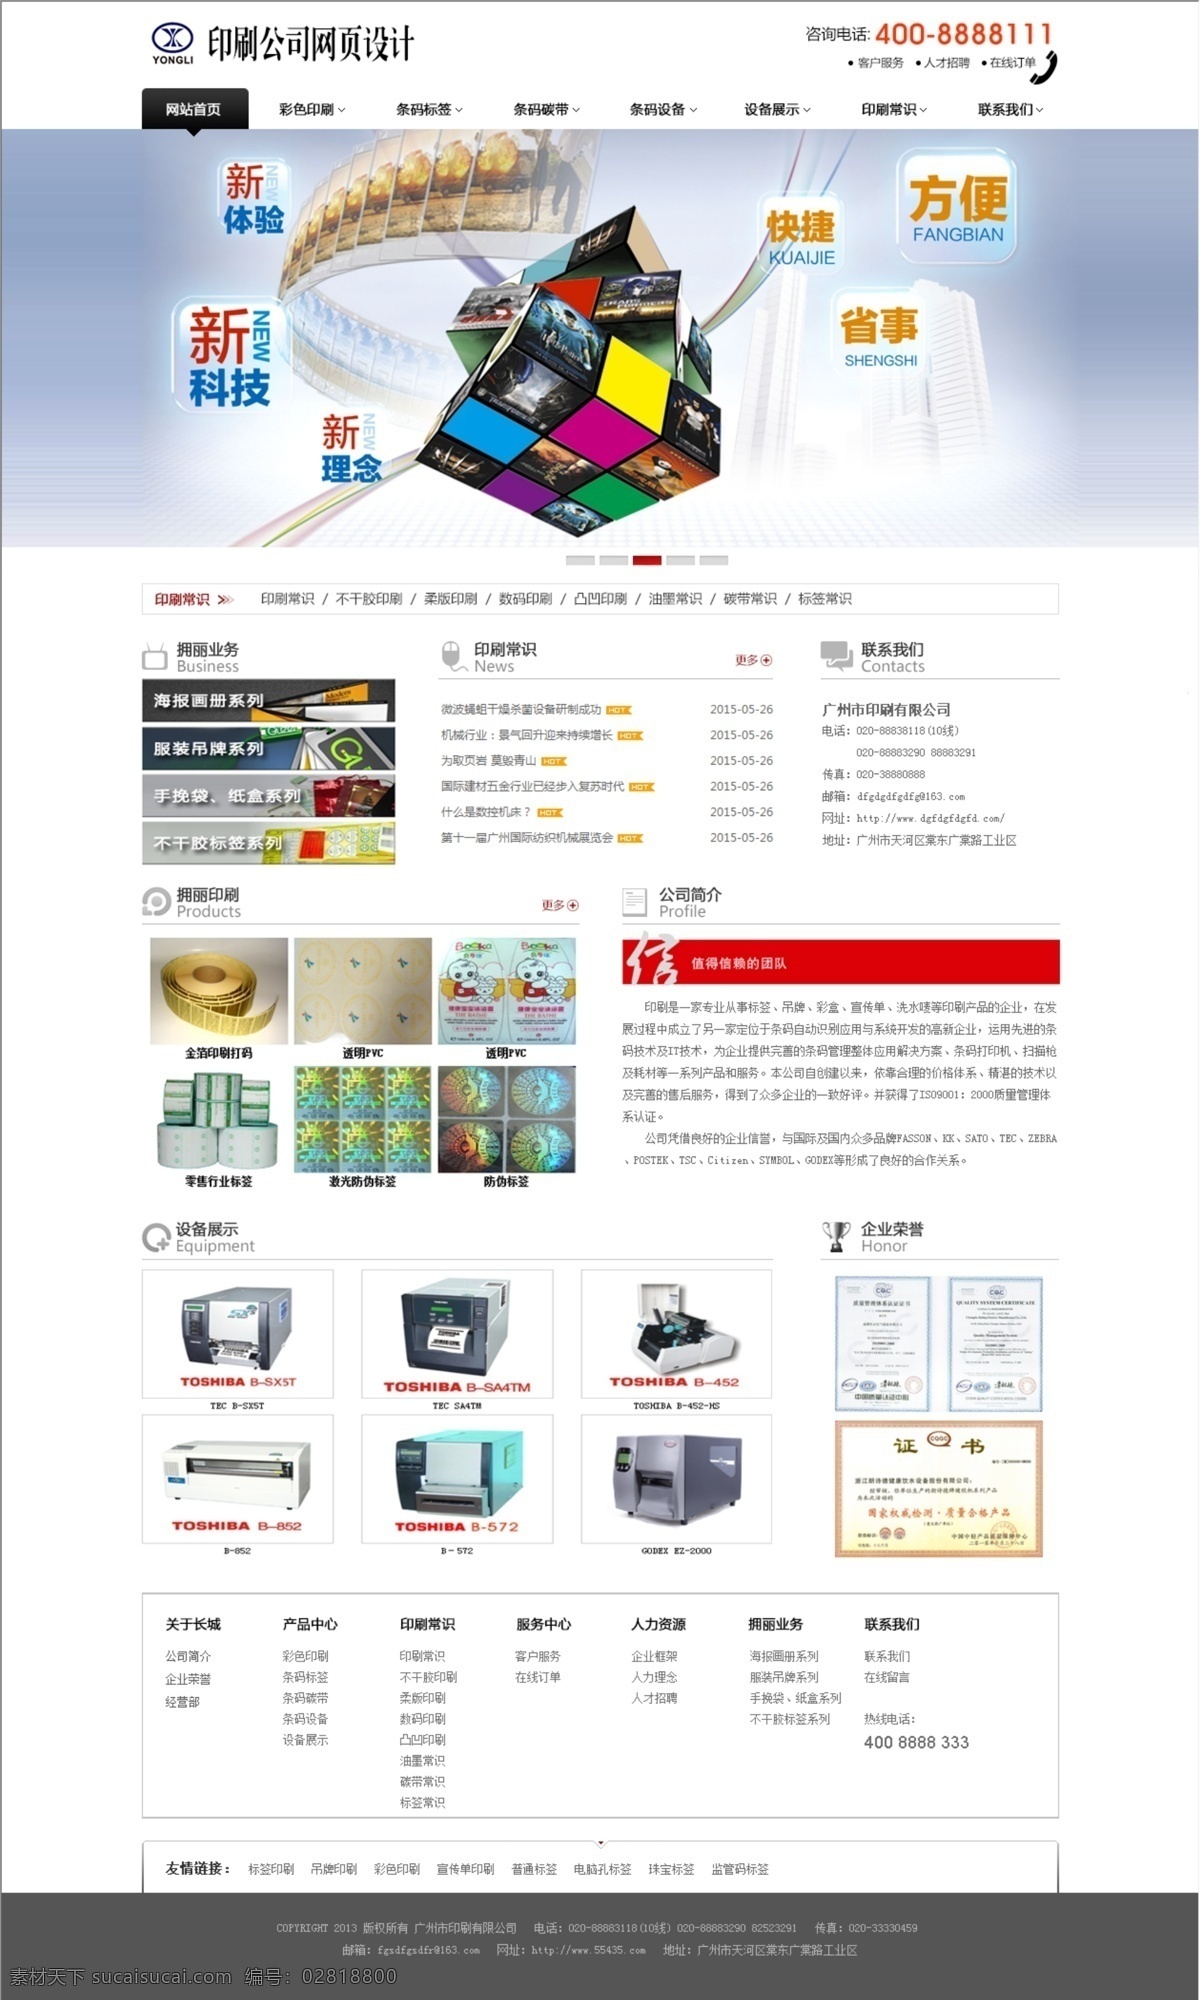 设备网站 网页模板 源文件 中文模板 印刷 公司 网页设计 模板下载 印刷行业网站 印刷网站 电子书网站 中文 企业 网页素材